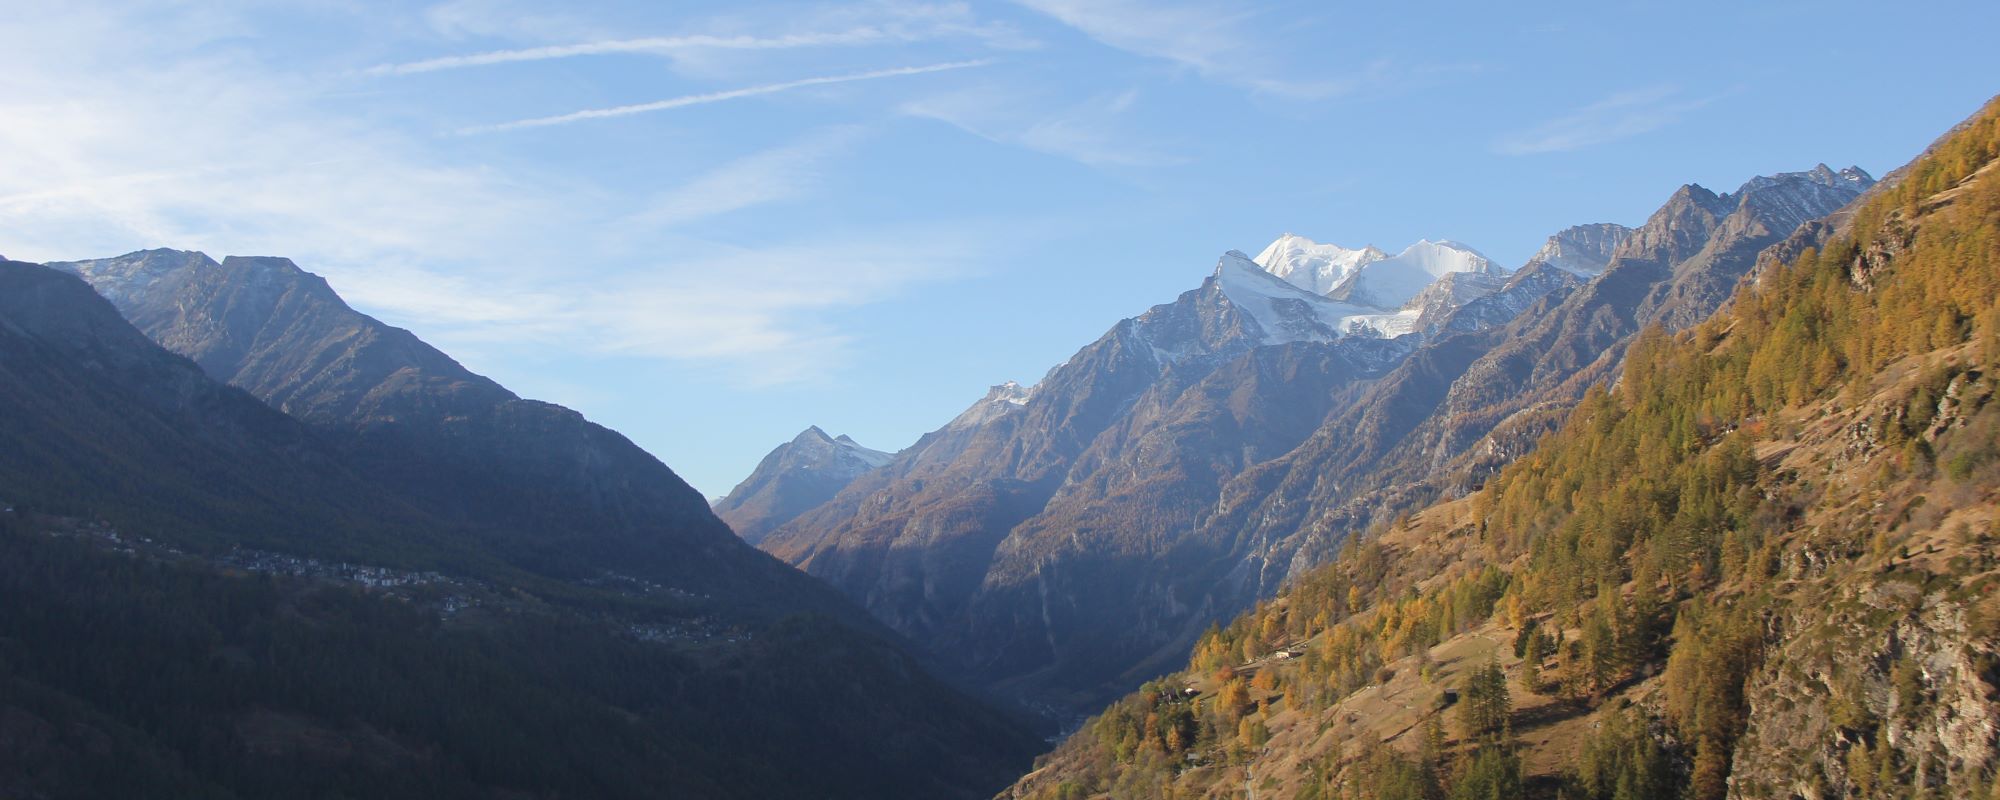 Kailash Scenery mountains